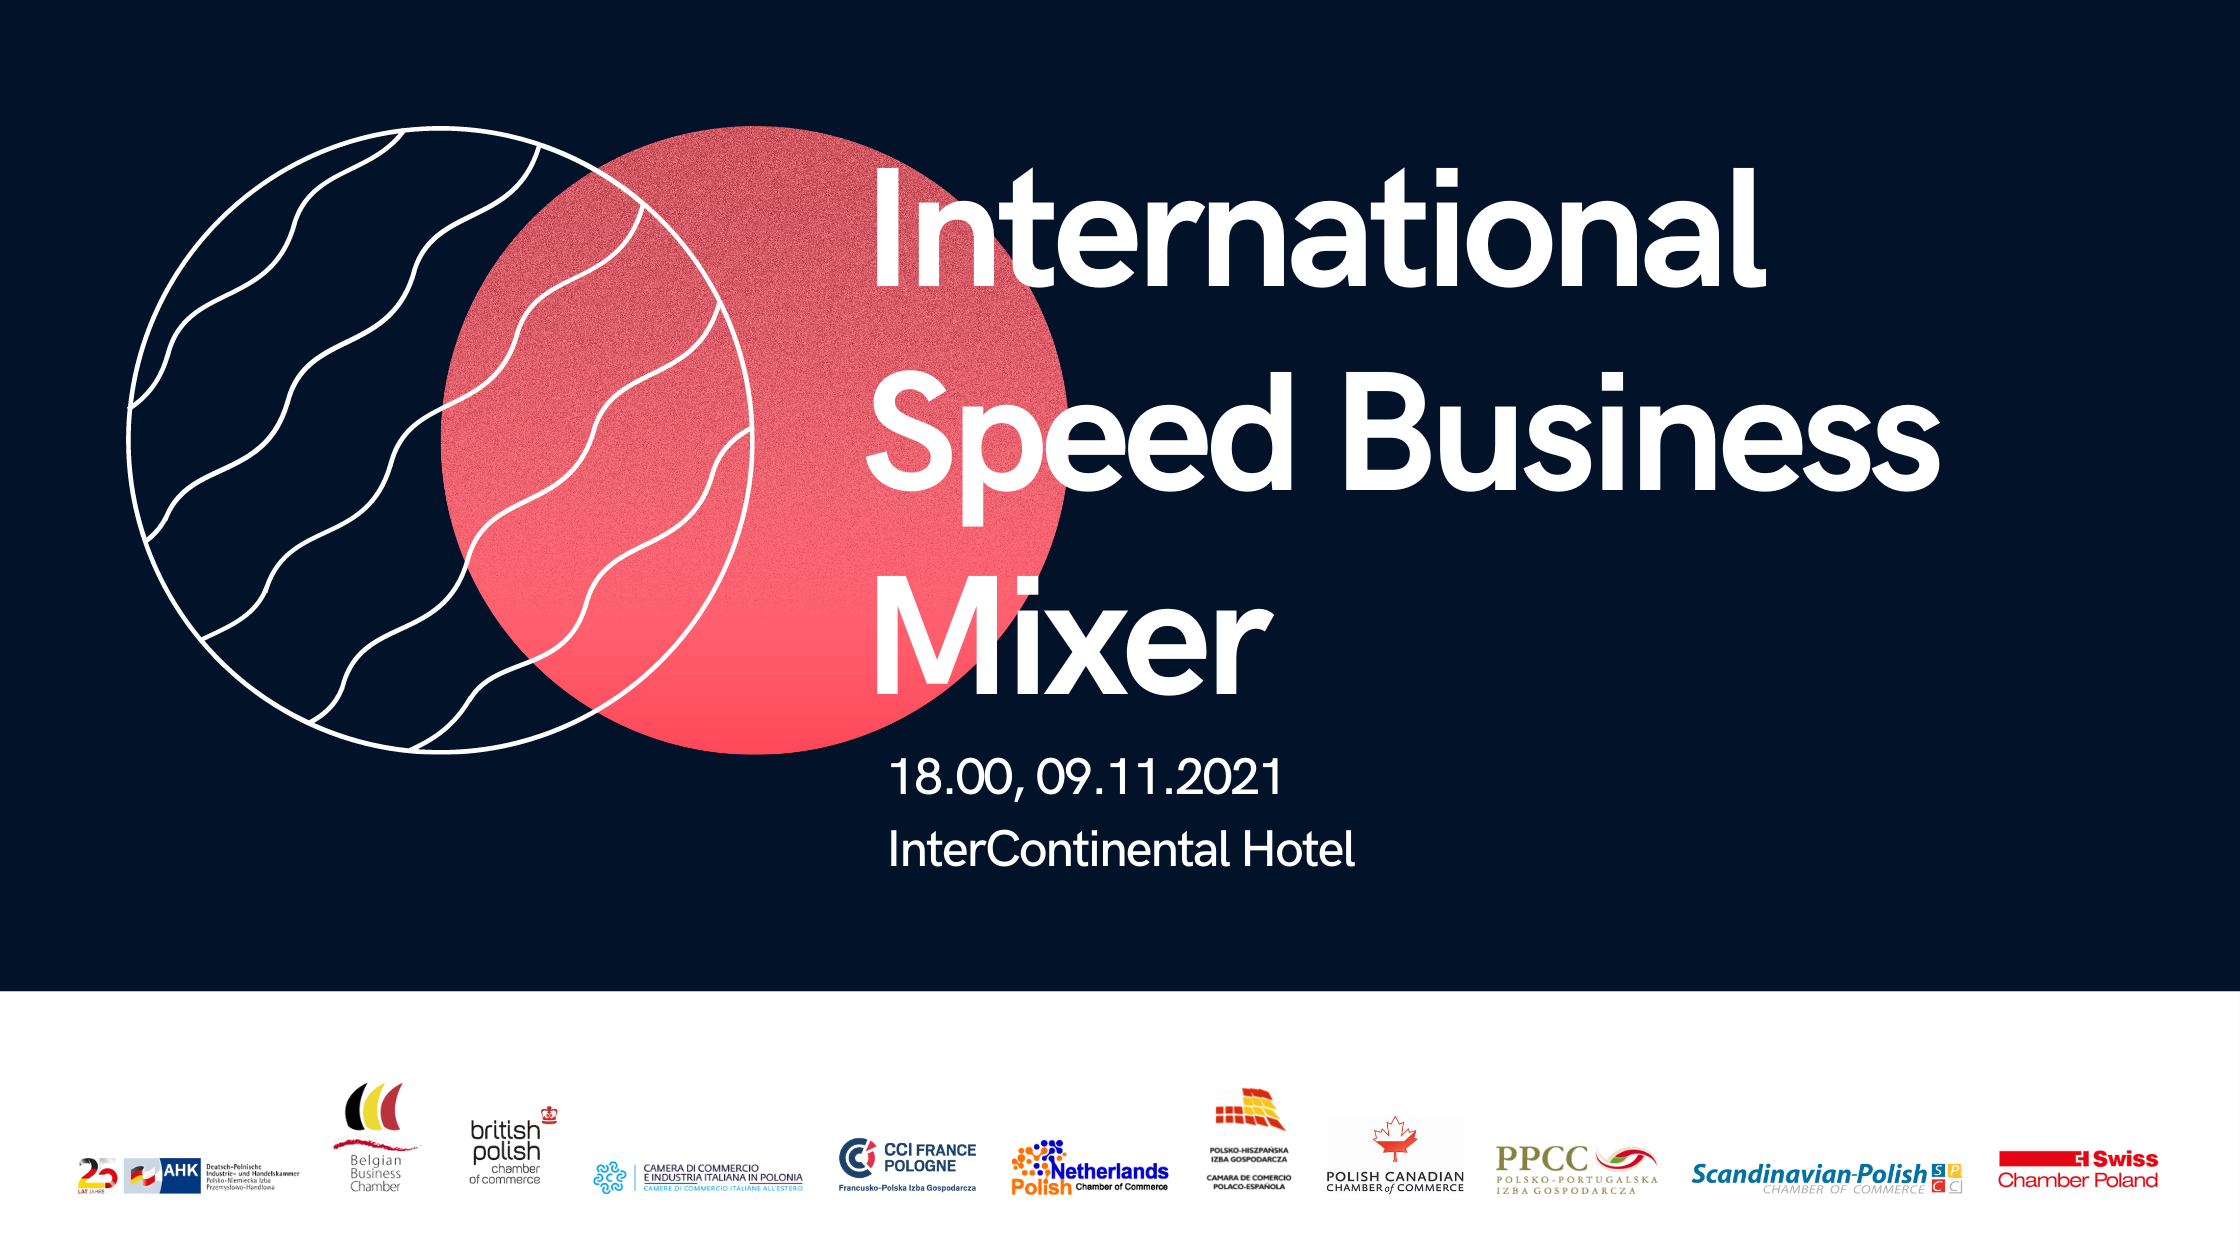 International Speed Business Mixer